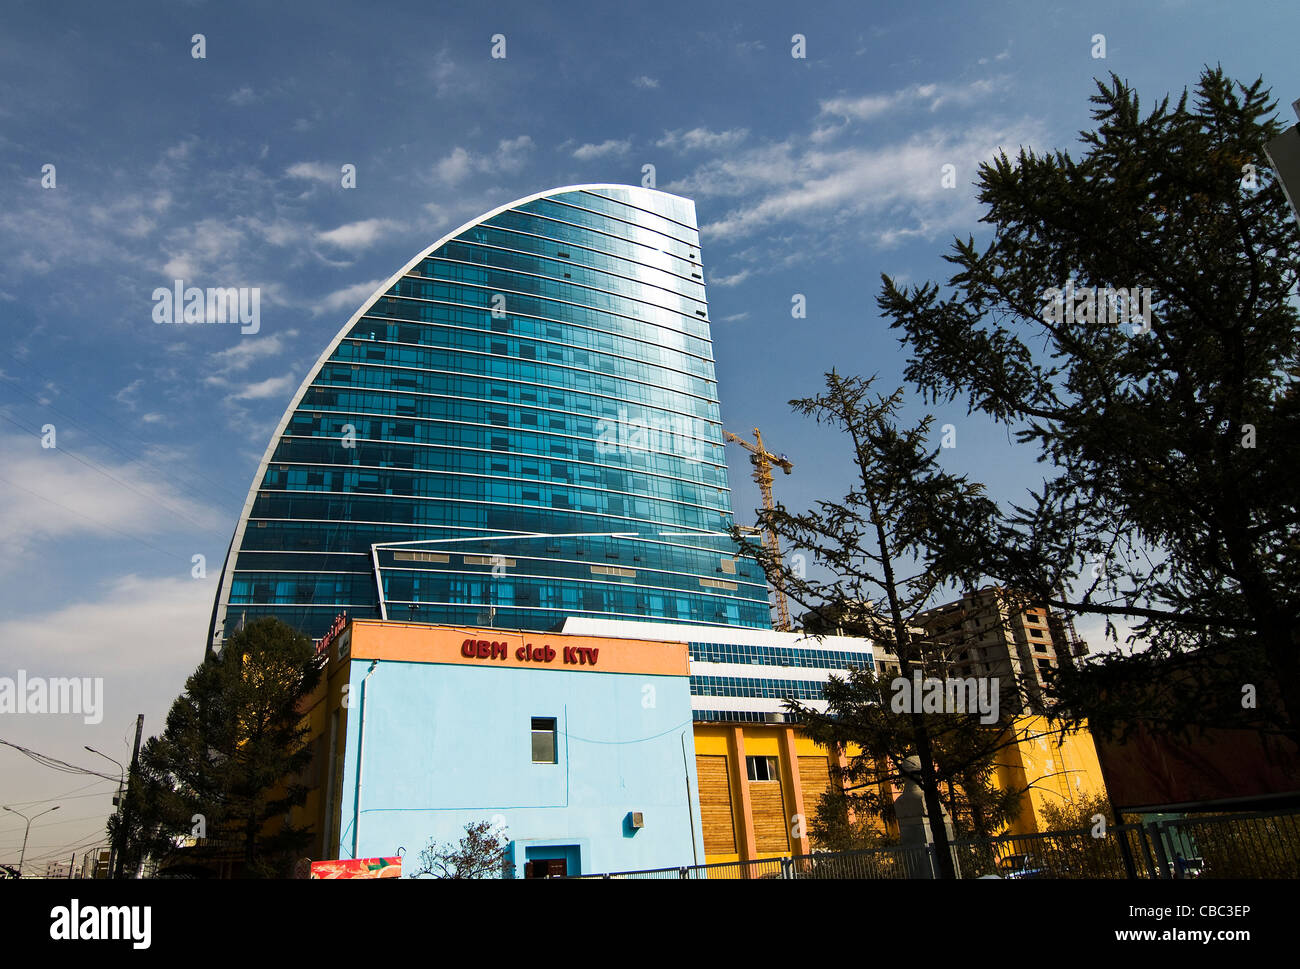 Ulan Bator è vedere cambiamenti rapidi. nuovi moderni edifici commerciali stanno cambiando la skyline della citta'. Foto Stock